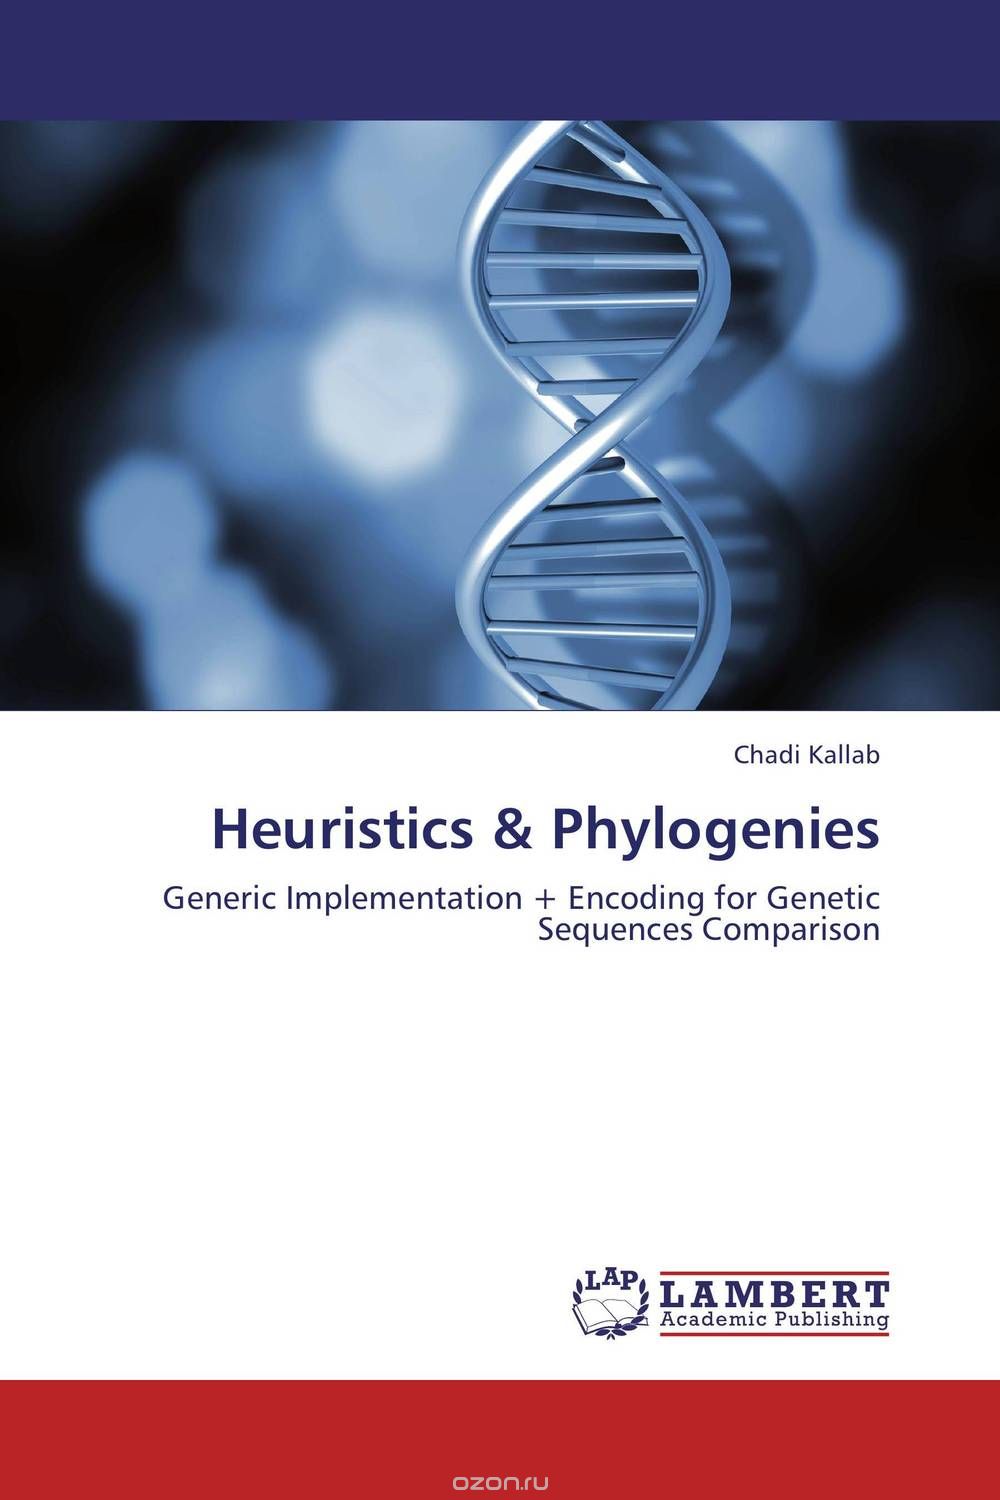 Скачать книгу "Heuristics & Phylogenies"